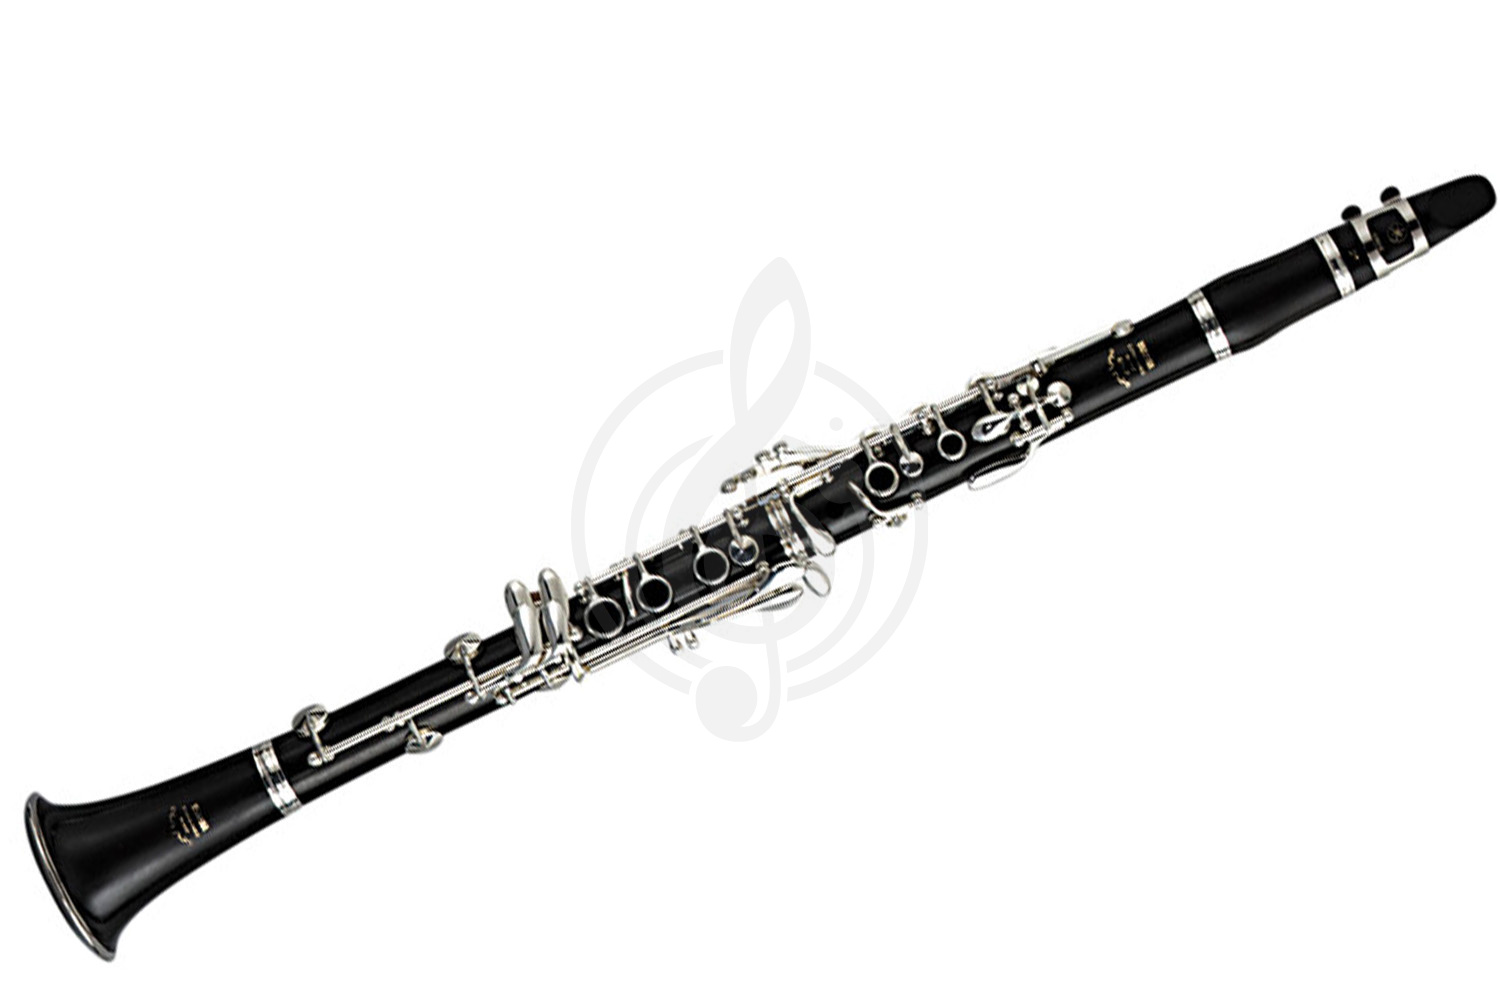 Кларнет Кларнеты Yamaha Yamaha YCL-650 - кларнет in Bb профессиональный, чёрное дерево, 17/6 посеребренные клавиши YCL-650 //WITH CASE COVER - фото 1